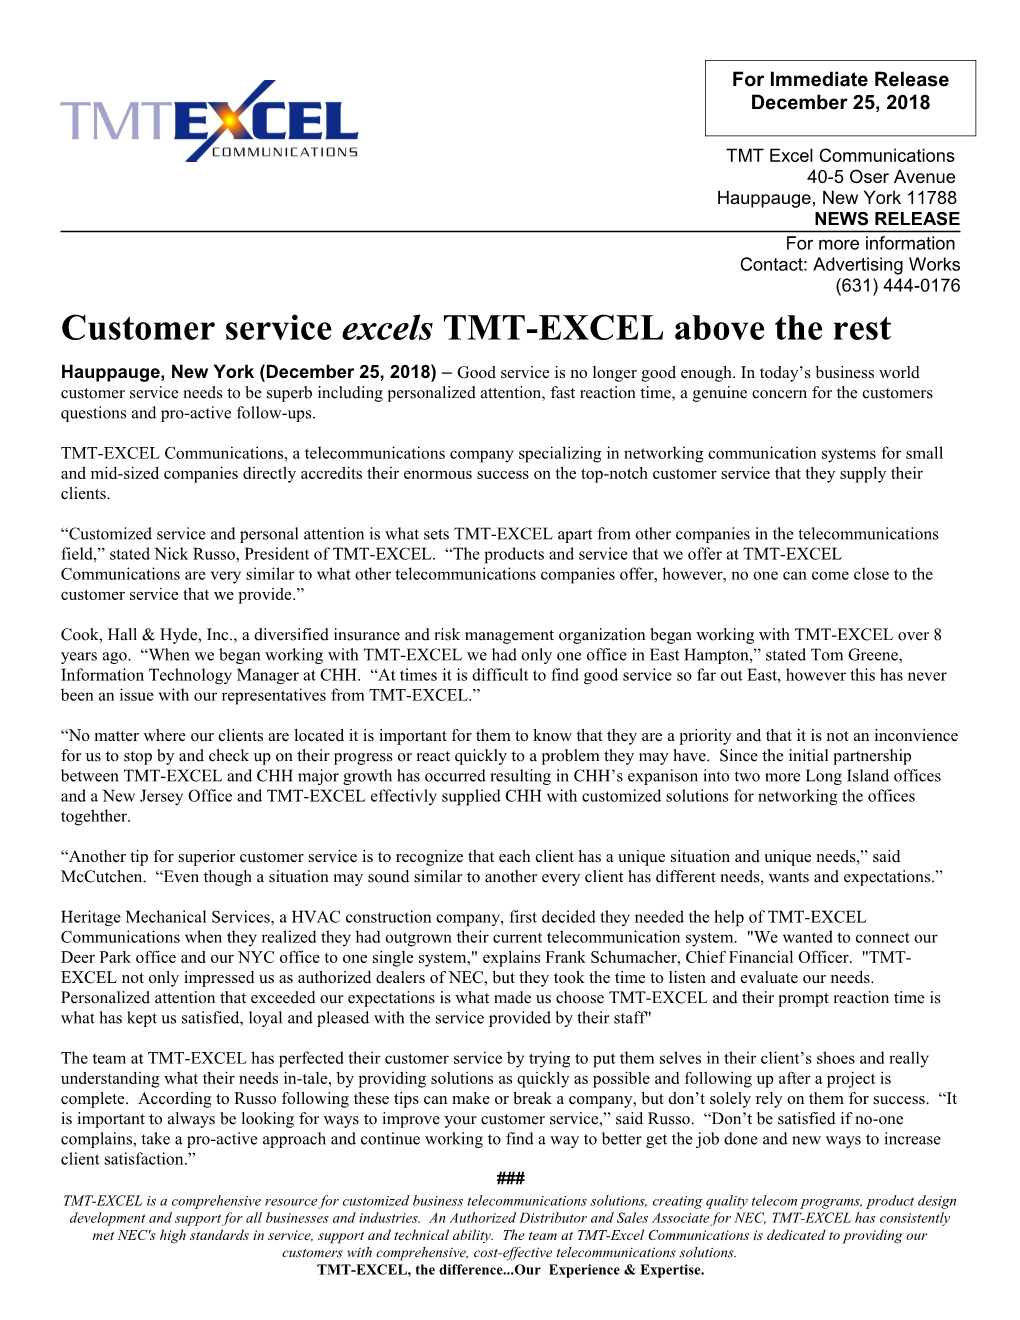 Customer Service Excels TMT-EXCEL Above the Rest